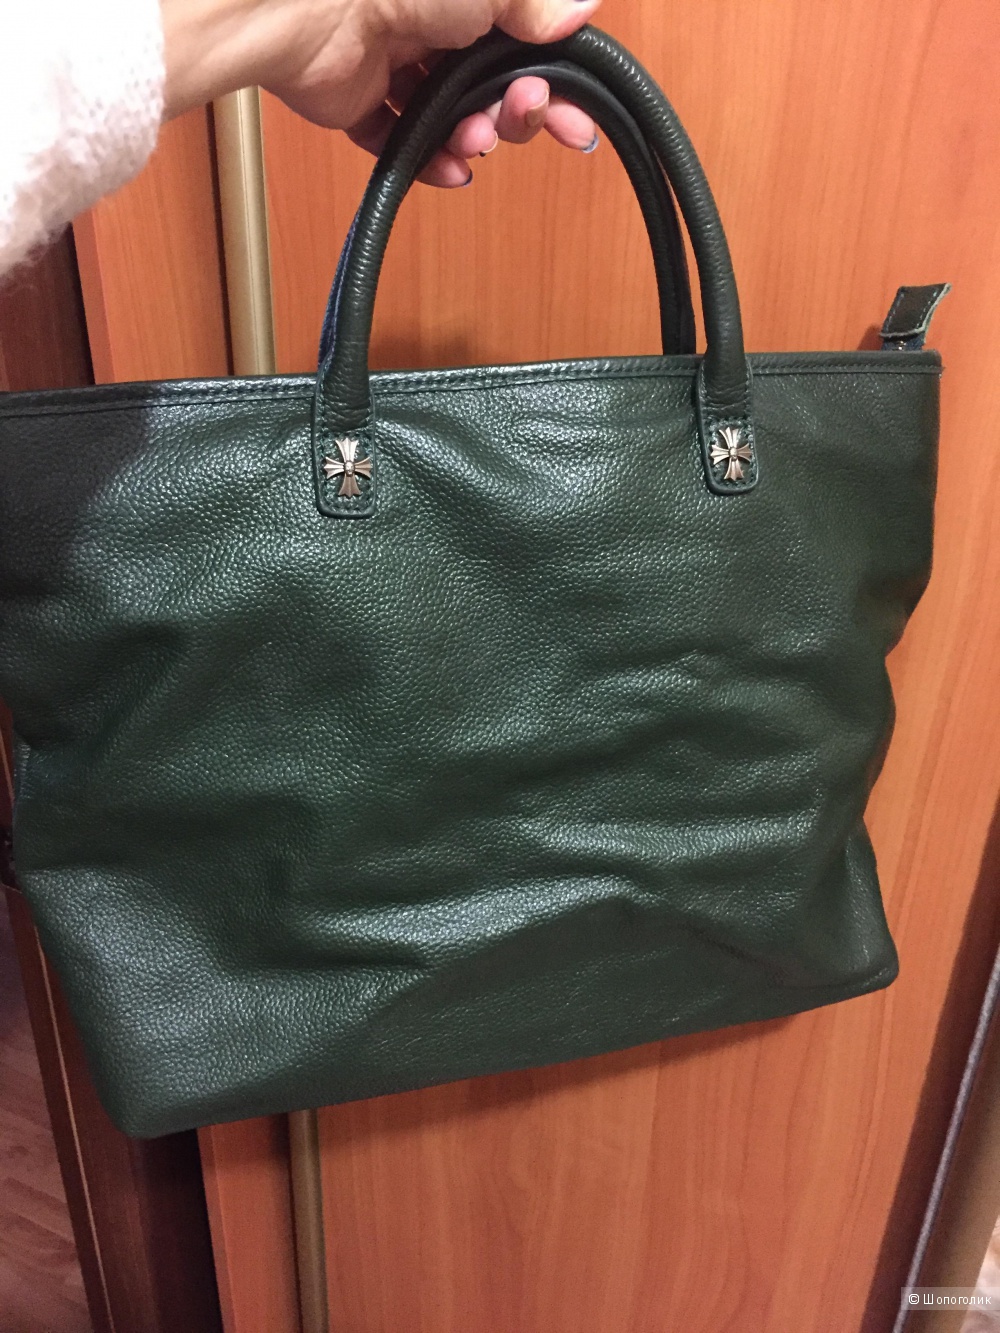 Новая кожаная сумка красивого темно-зеленого цвета